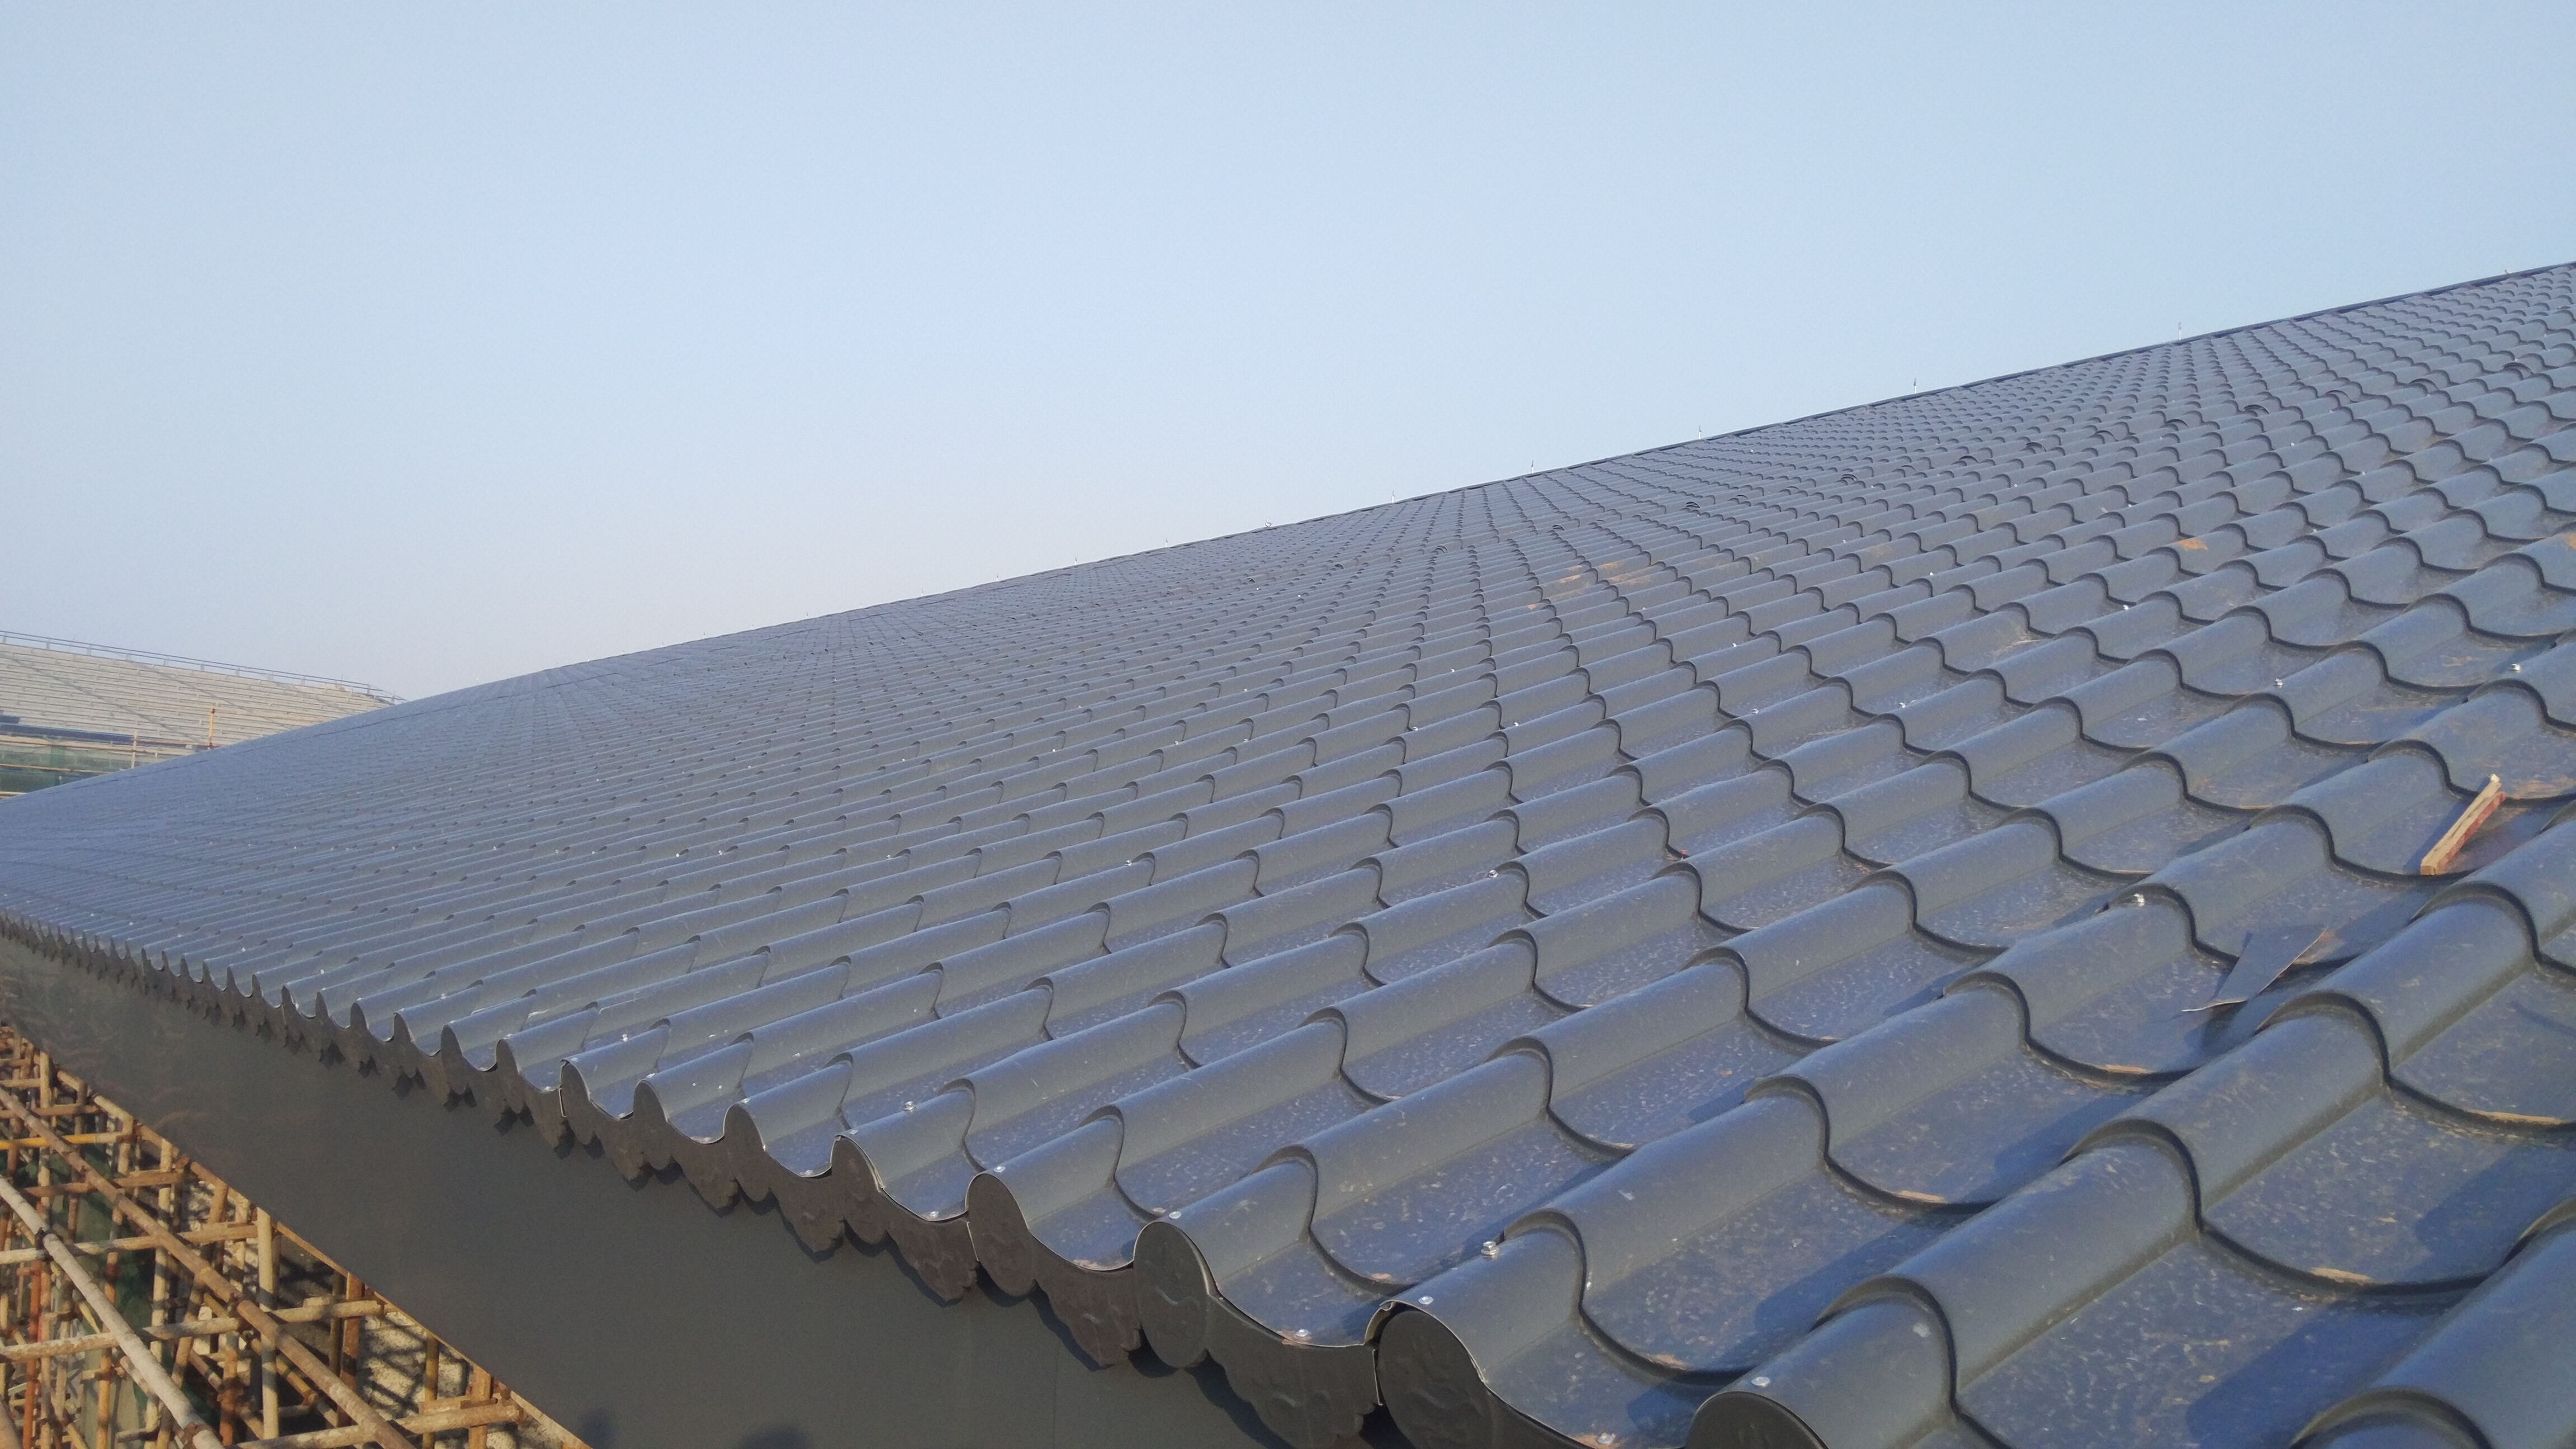 铝镁锰合金瓦 铝镁锰屋面系统 双锁边铝镁锰屋面板免费深化设计